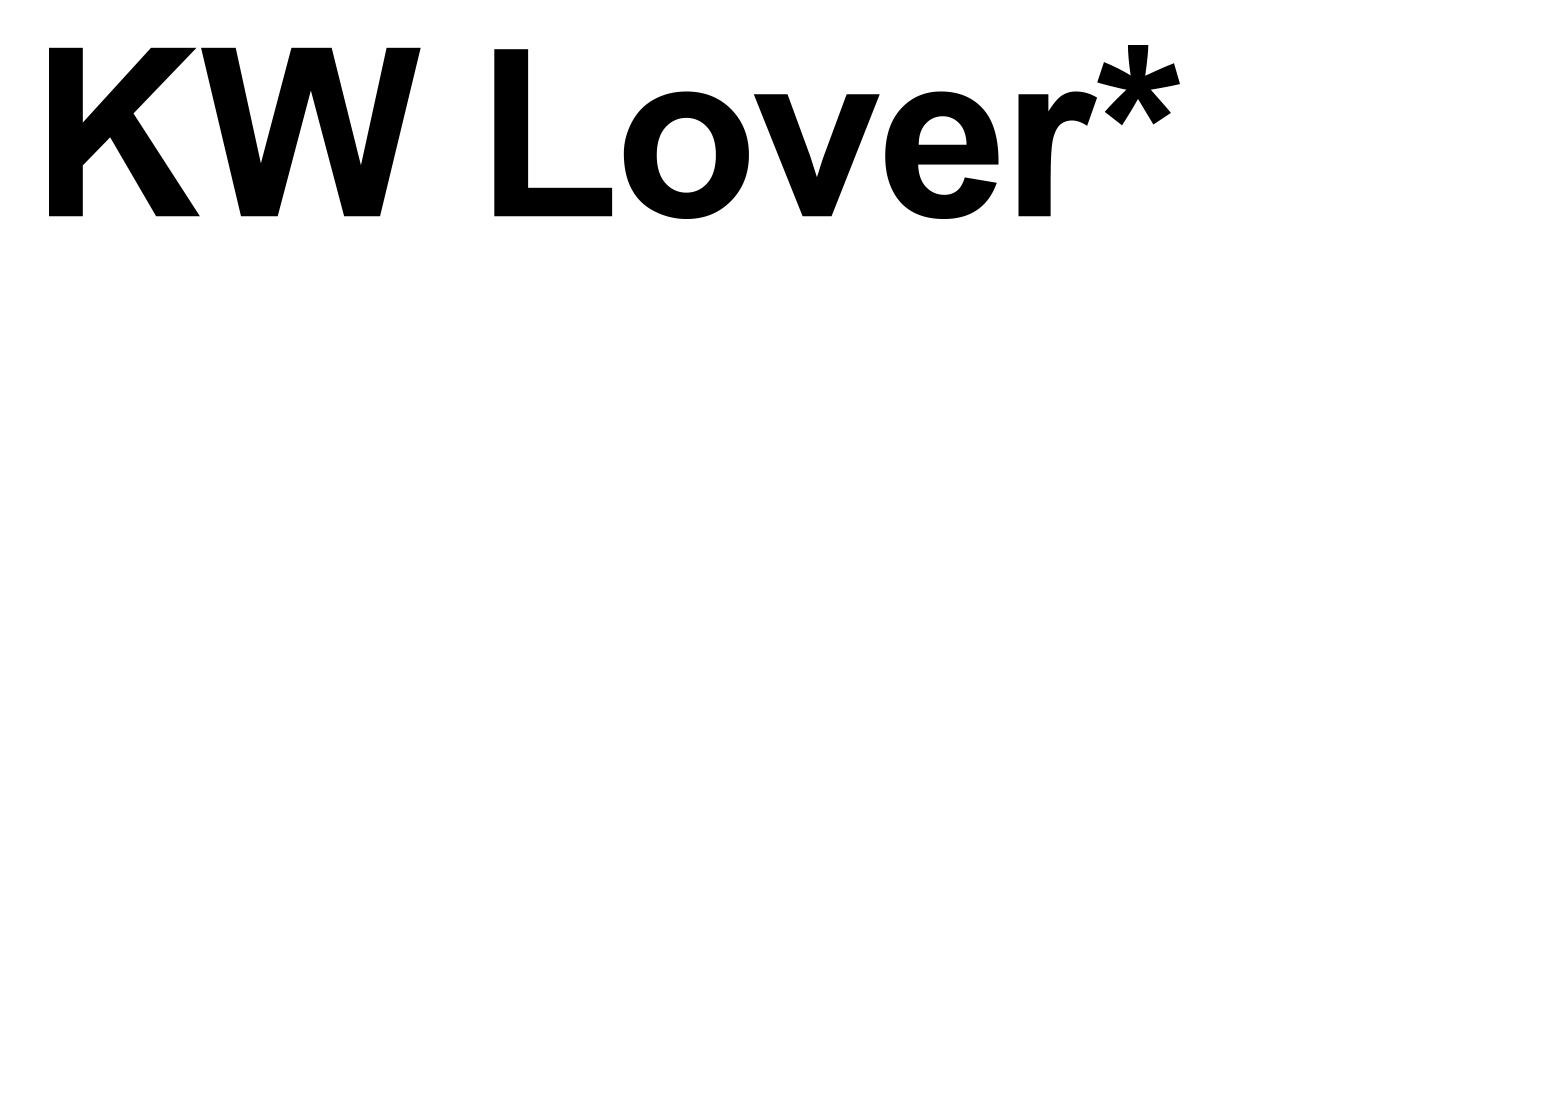 KW Lover* ermäßigt/ reduced